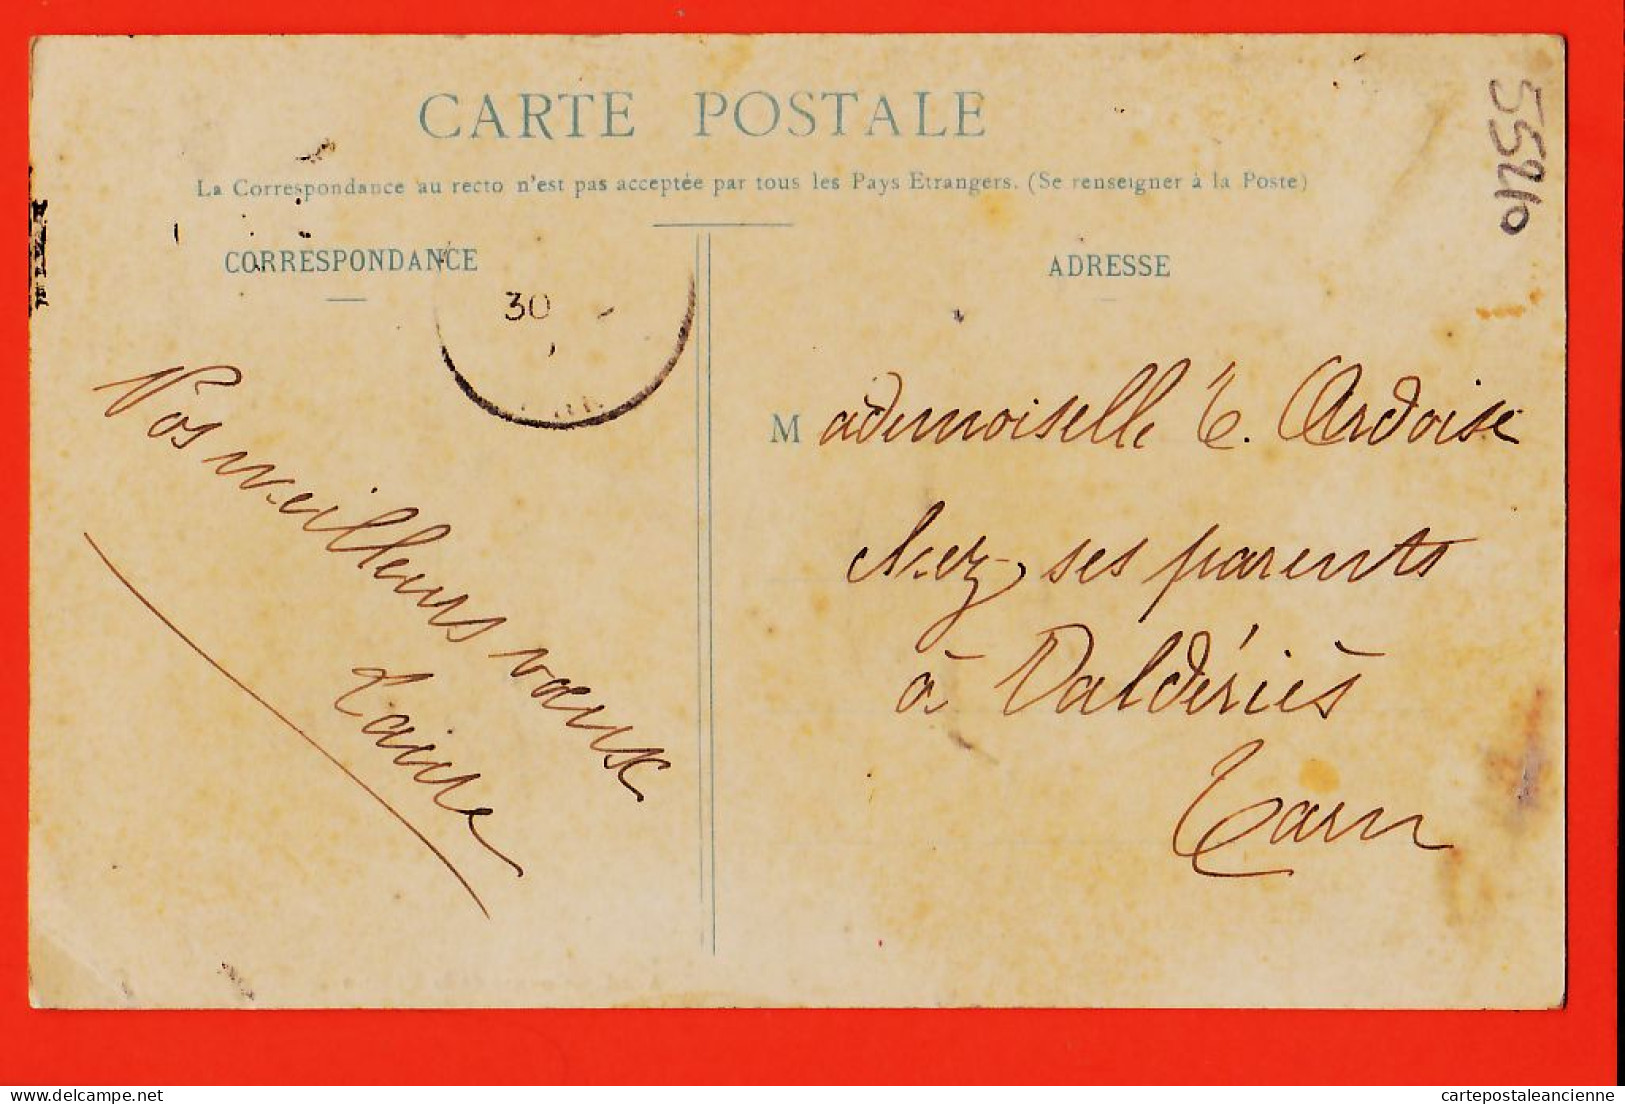 28326 / ALBI 81-Tarn Counté Dé La MENINO Par LIOZU 1908 à Elise ARDOISE Valéries / Librairie TRANIER  - Albi